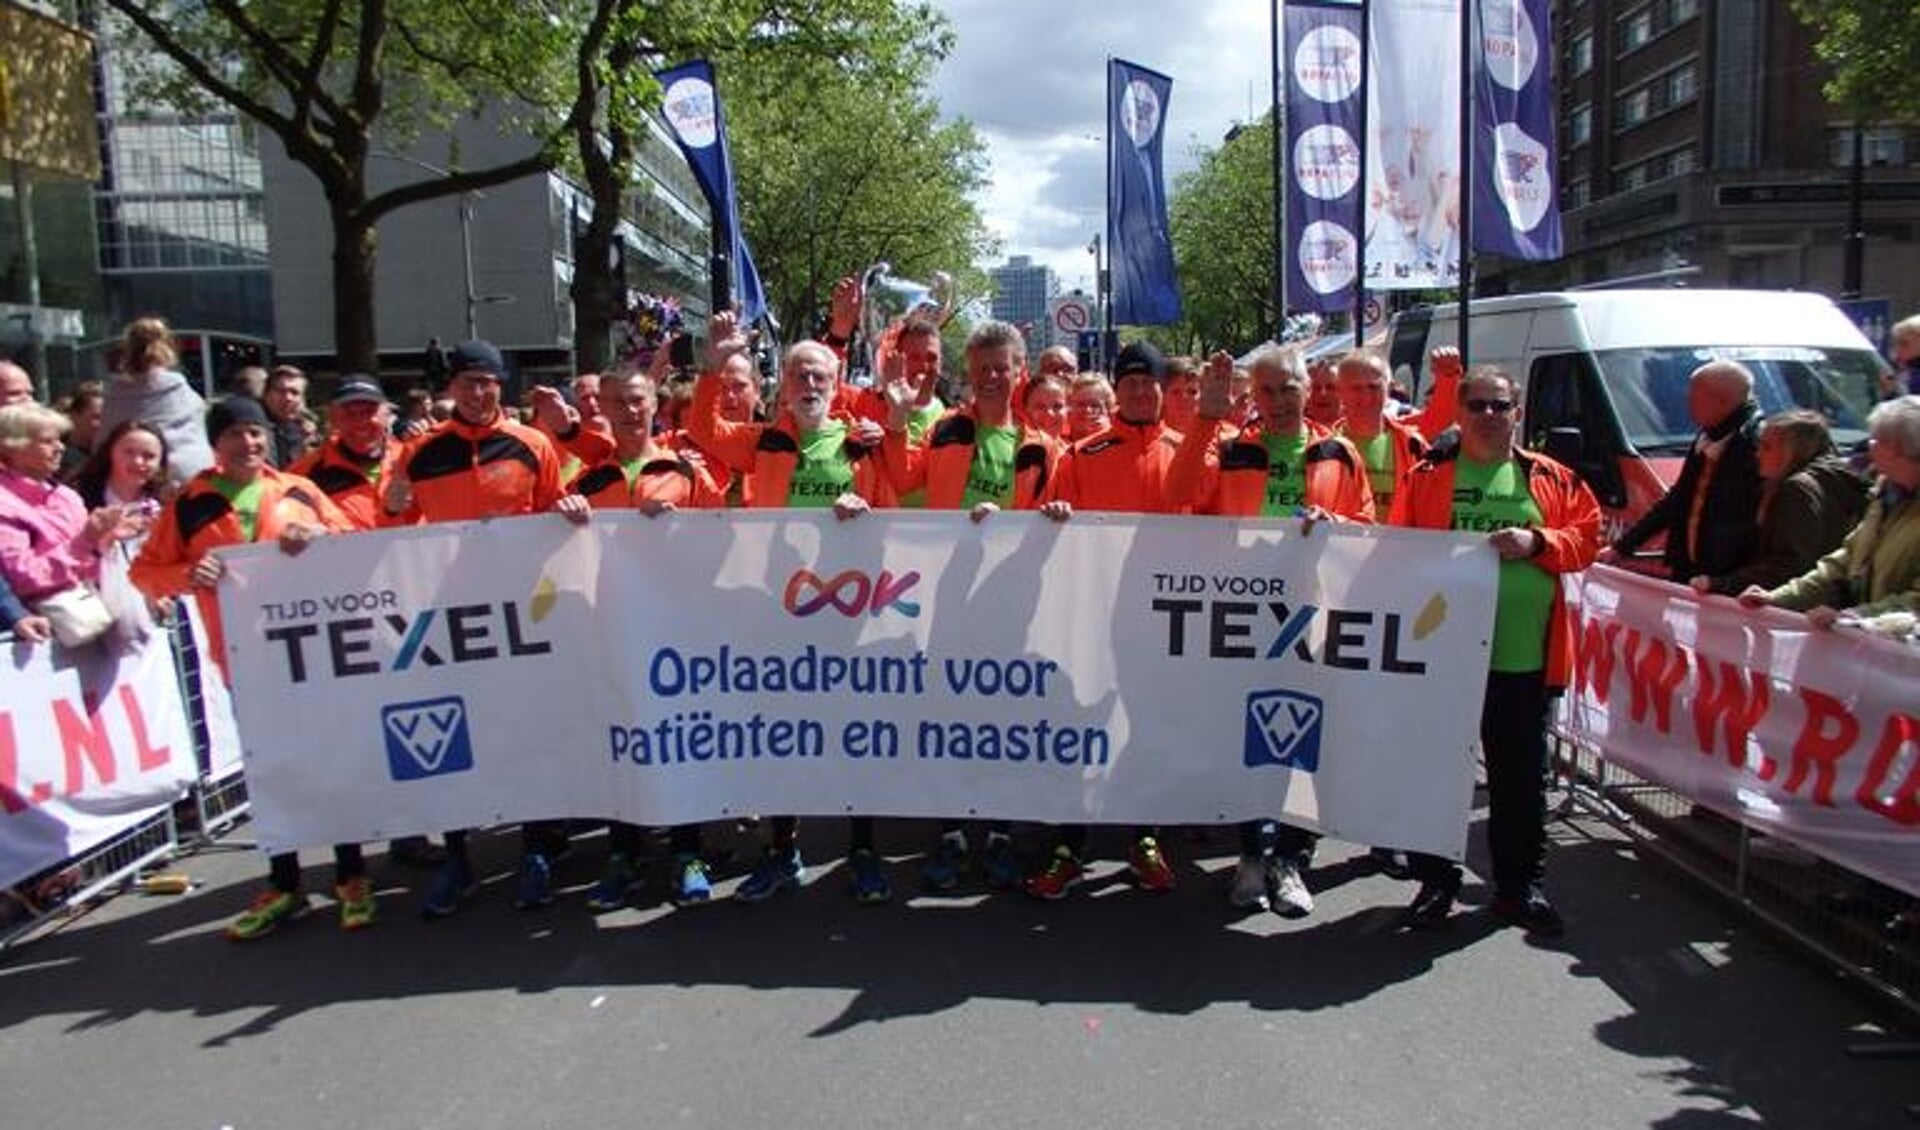 De finish aan de Coolsingel van de Texelrunners. (Foto: Mikel Knippenberg)